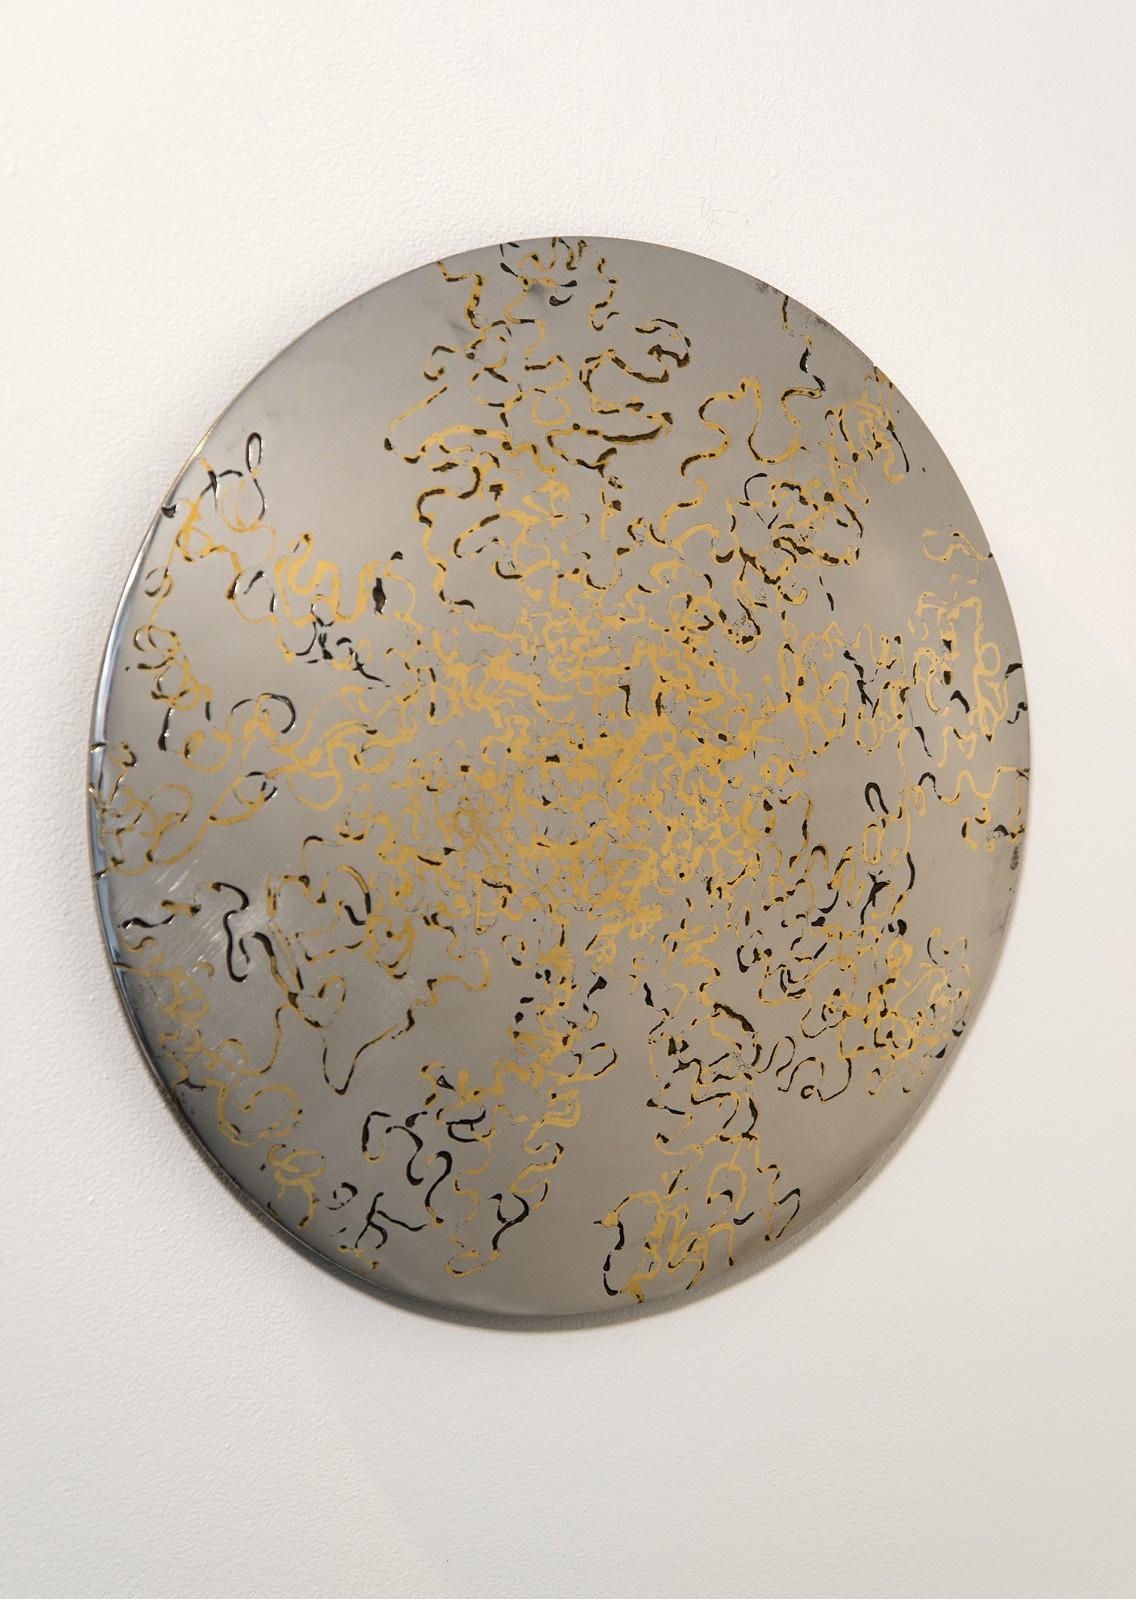 Eine juwelenartige Oberfläche aus poliertem Stahl und Bronzeeinlagen reflektiert das Umgebungslicht in diesem Tondo von Shayne Dark. Das in die Stahloberfläche geschnittene Muster wurde mit geschmolzener Bronze besprüht, um die komplizierte Einlage